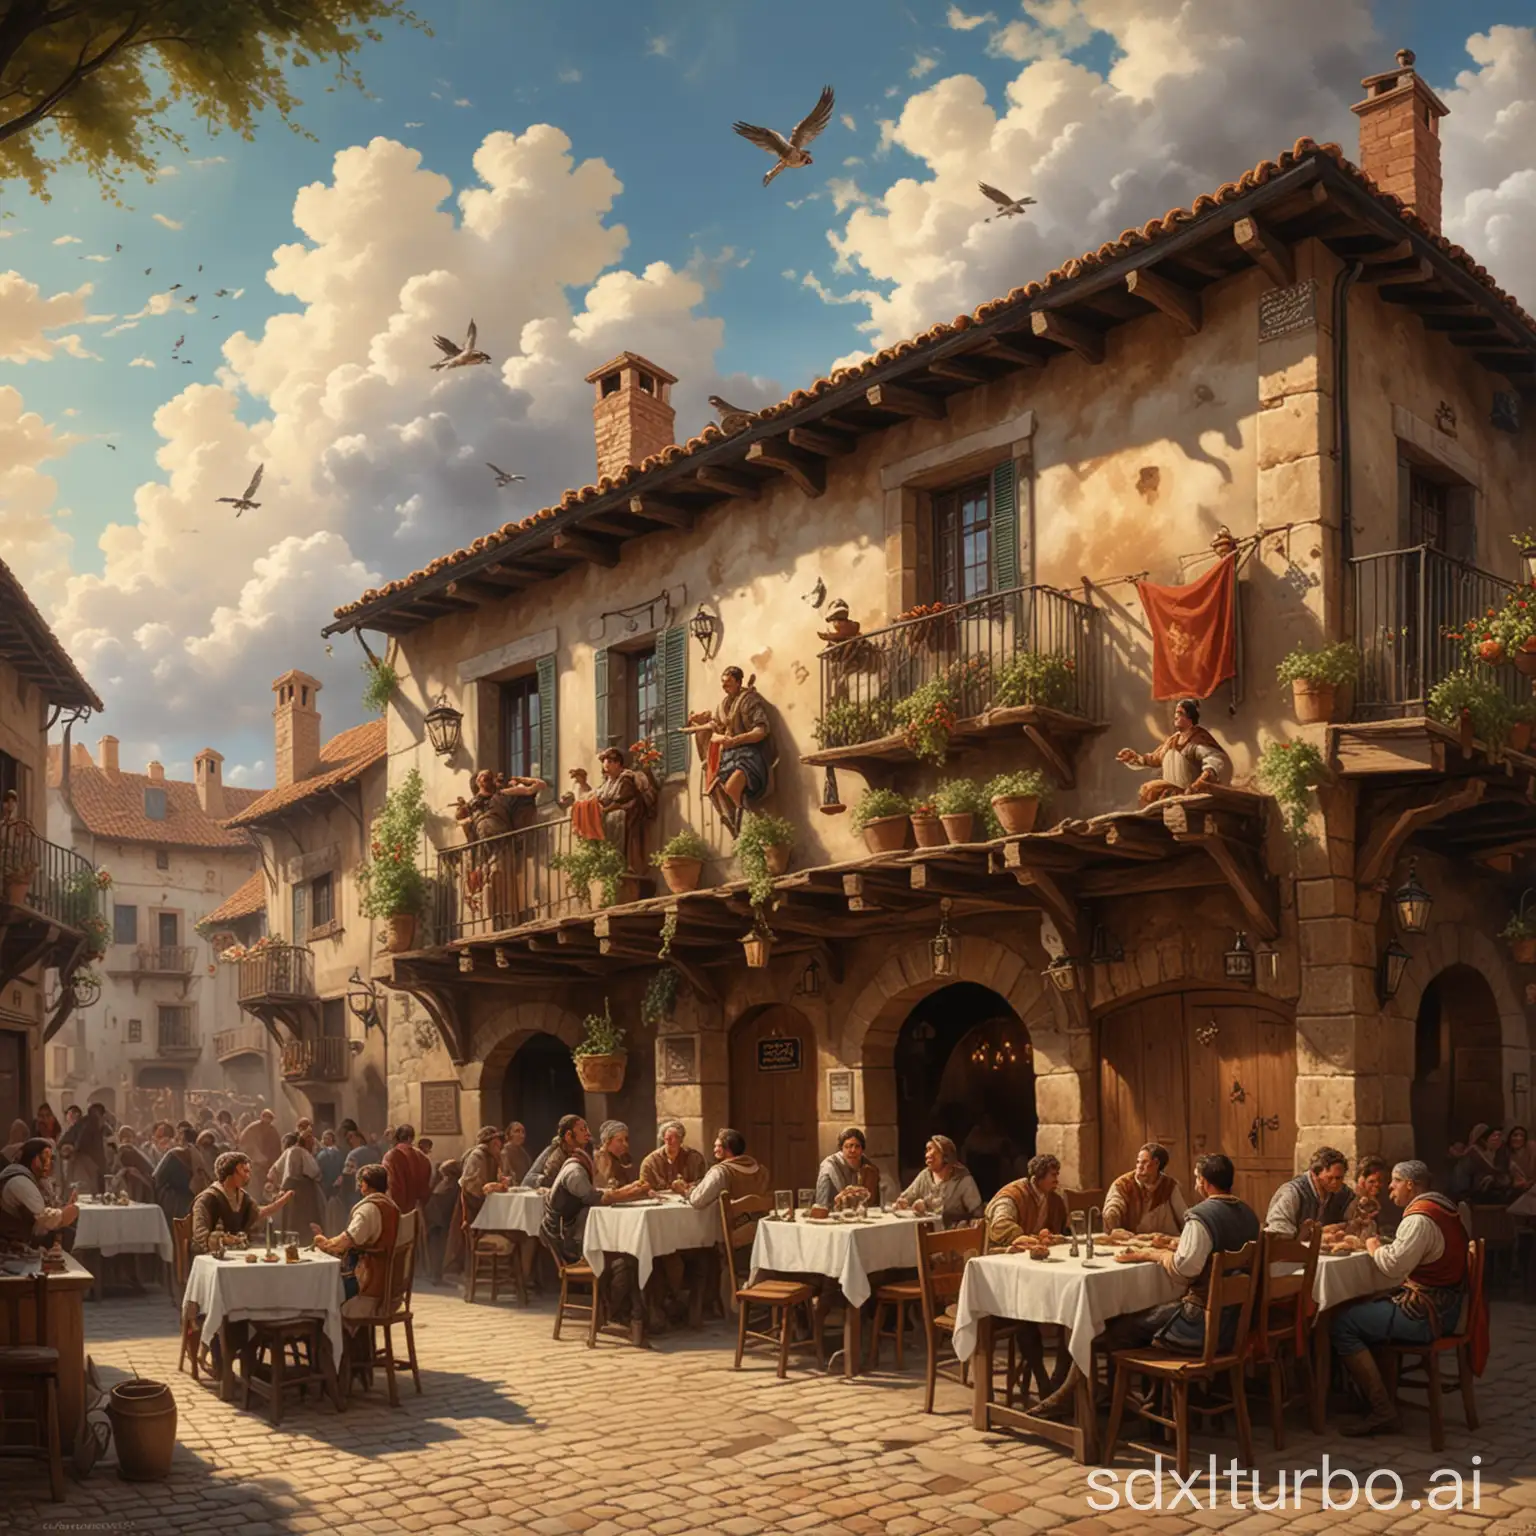 Personas celebrando en una taberna española en el 1400 en una época medieval, estilo de pintura del siglo 14, taberna con asientos al aire libre, nubes rizadas en el cielo por encima de la taberna, personas celebrando en la taberna, pequeños gorriones en el cielo